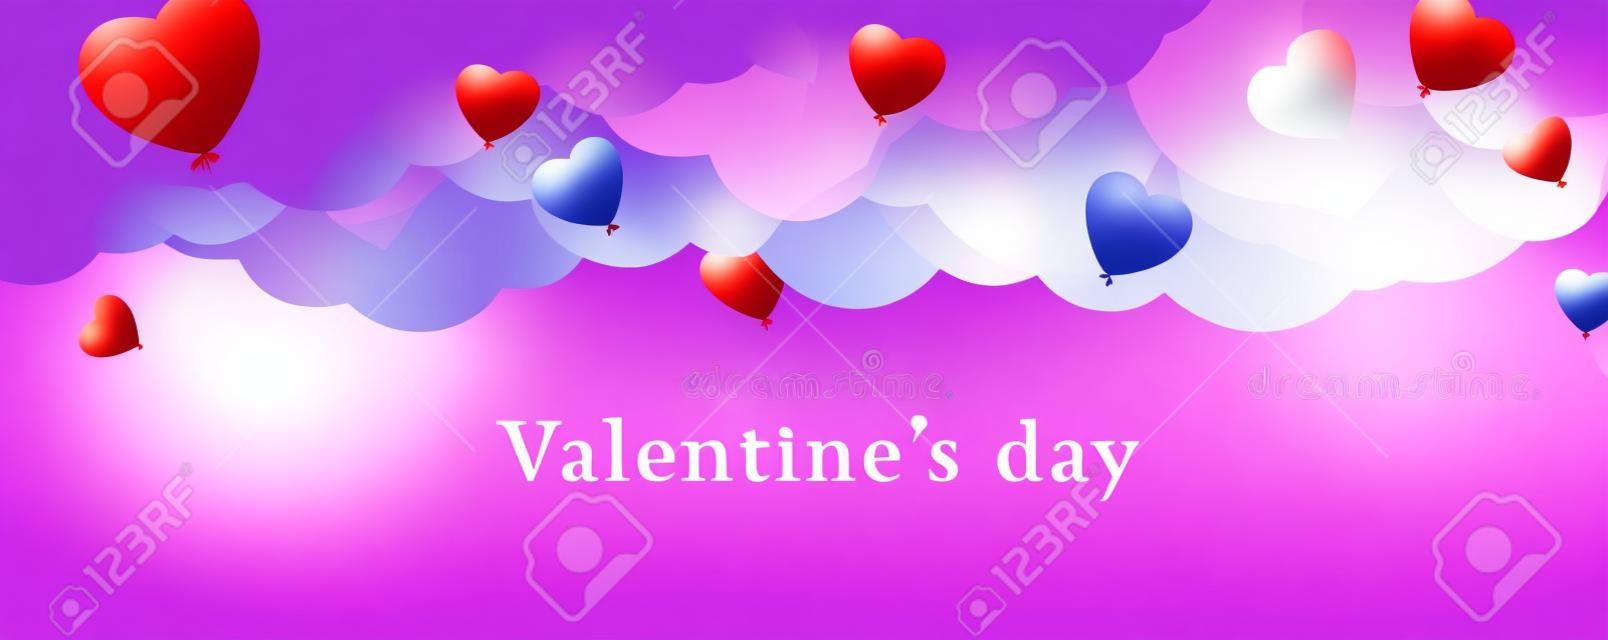 Fond de Saint Valentin avec des ballons en forme de coeur. Vector illustration.banners.Wallpaper.flyers, invitation, affiches, brochure, bon de réduction.